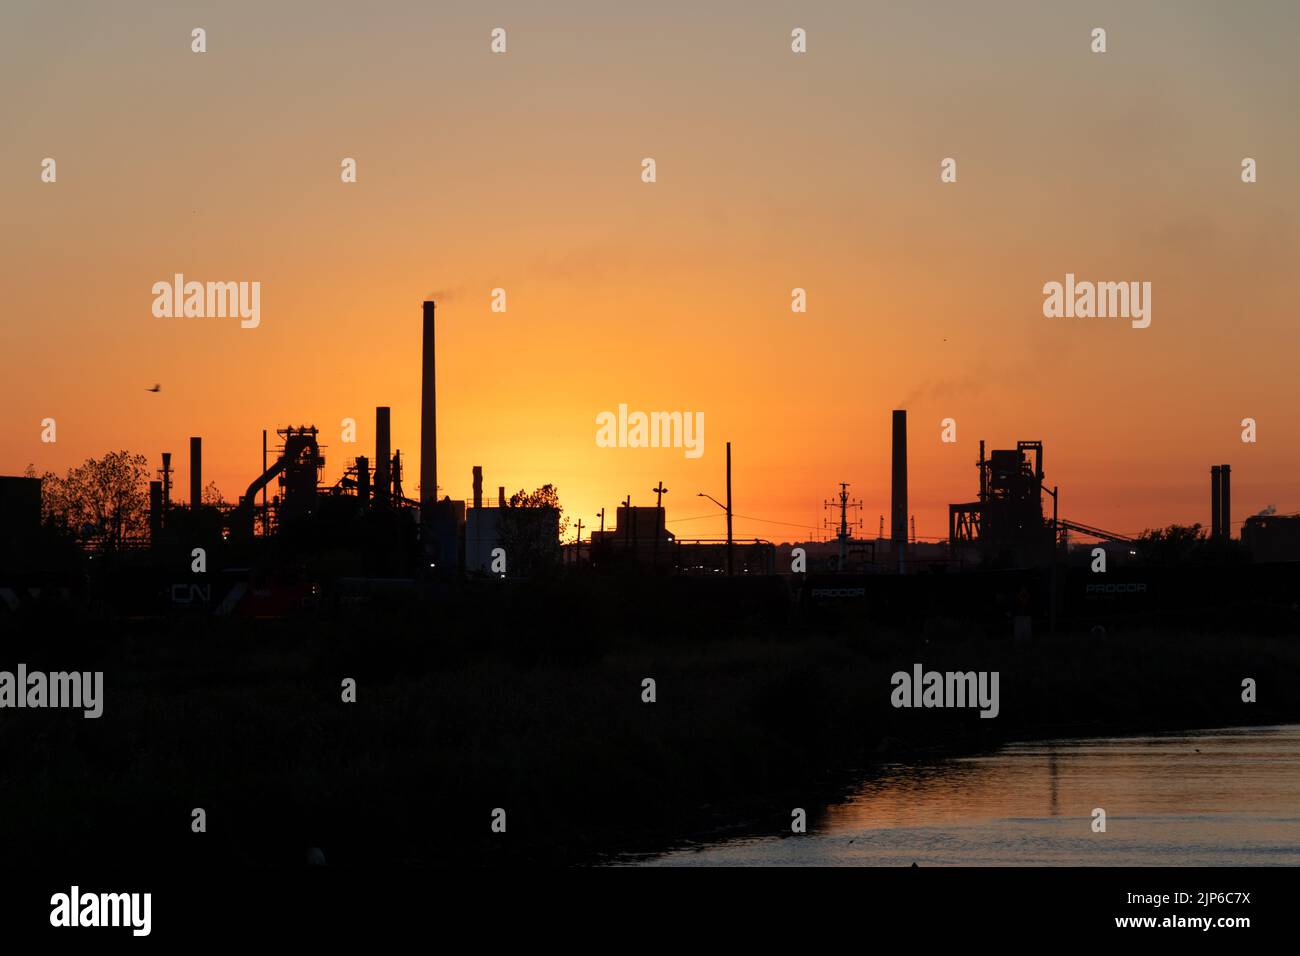 Un paisaje industrial en el Puerto de Hamilton se ve al atardecer, chimeneas y fábricas se ven oscuras a lo largo del horizonte frente al mar. Foto de stock